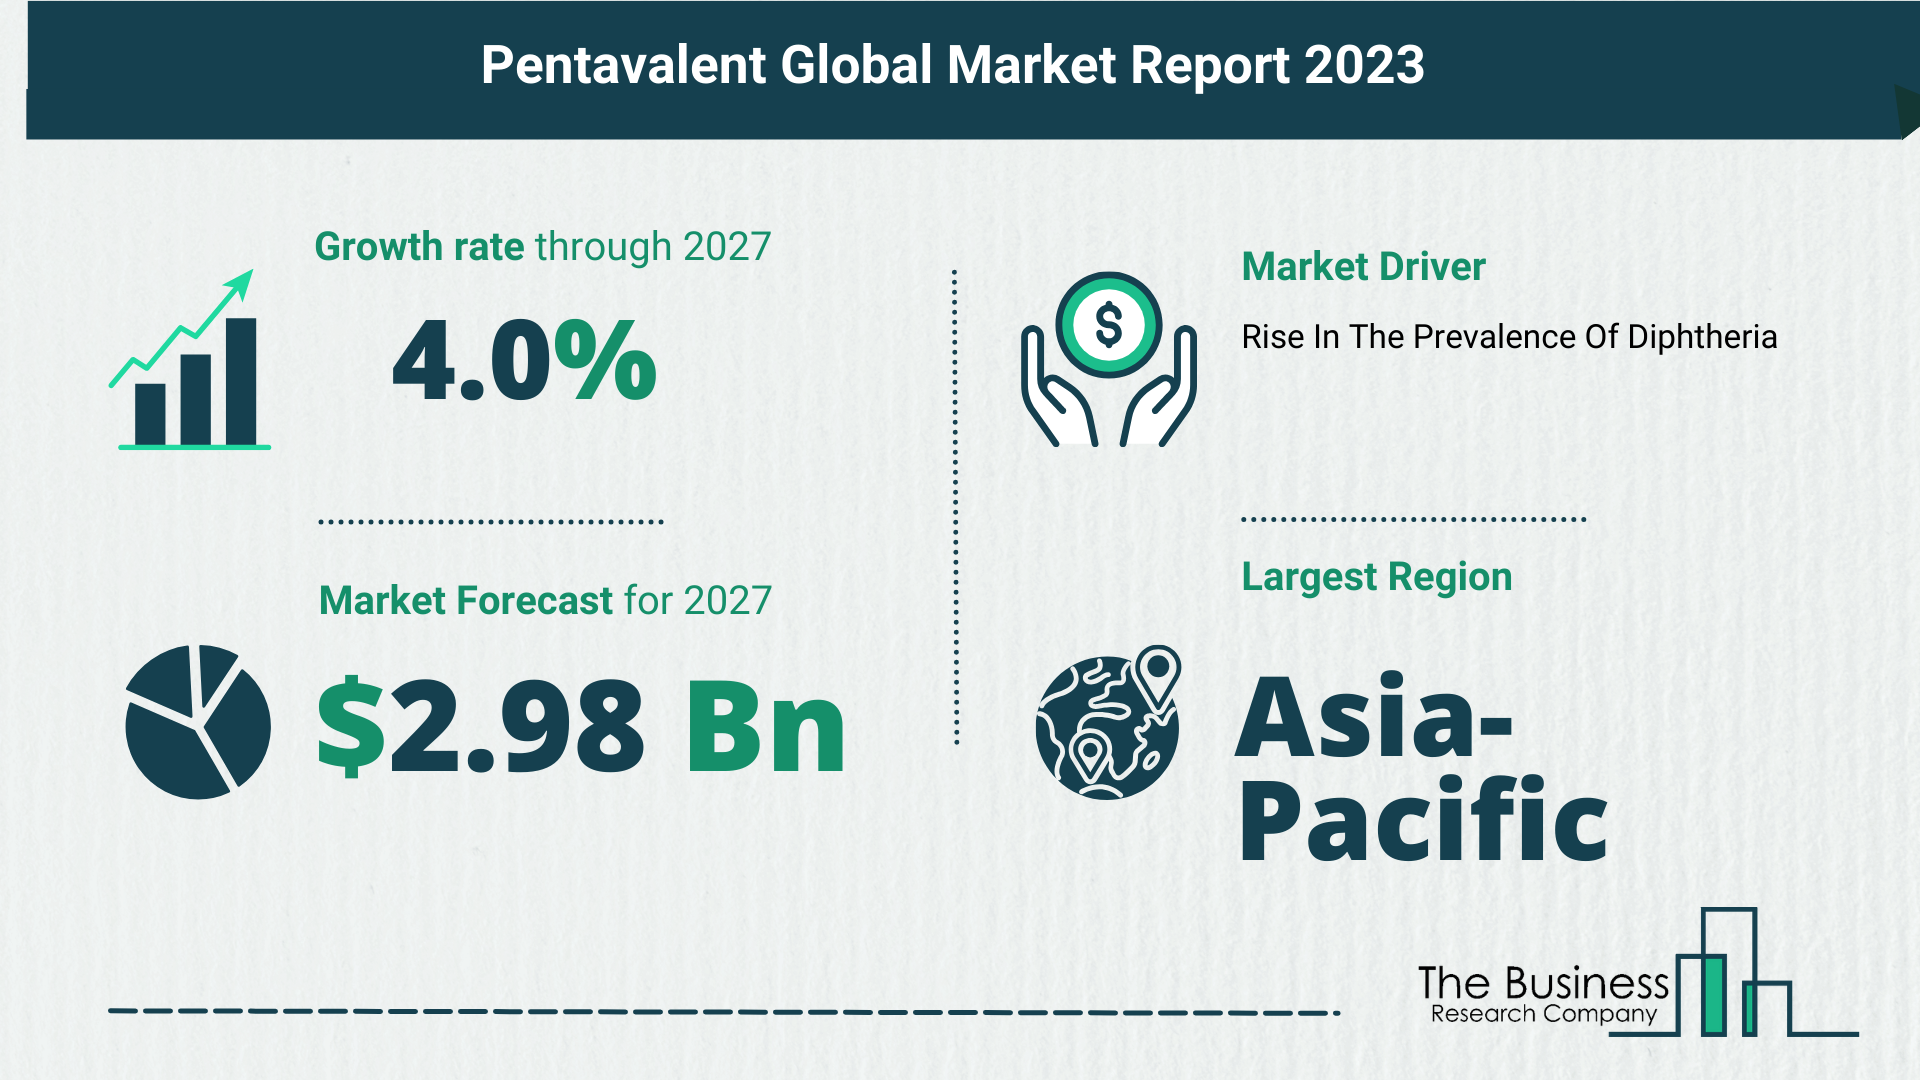 Global Pentavalent Market